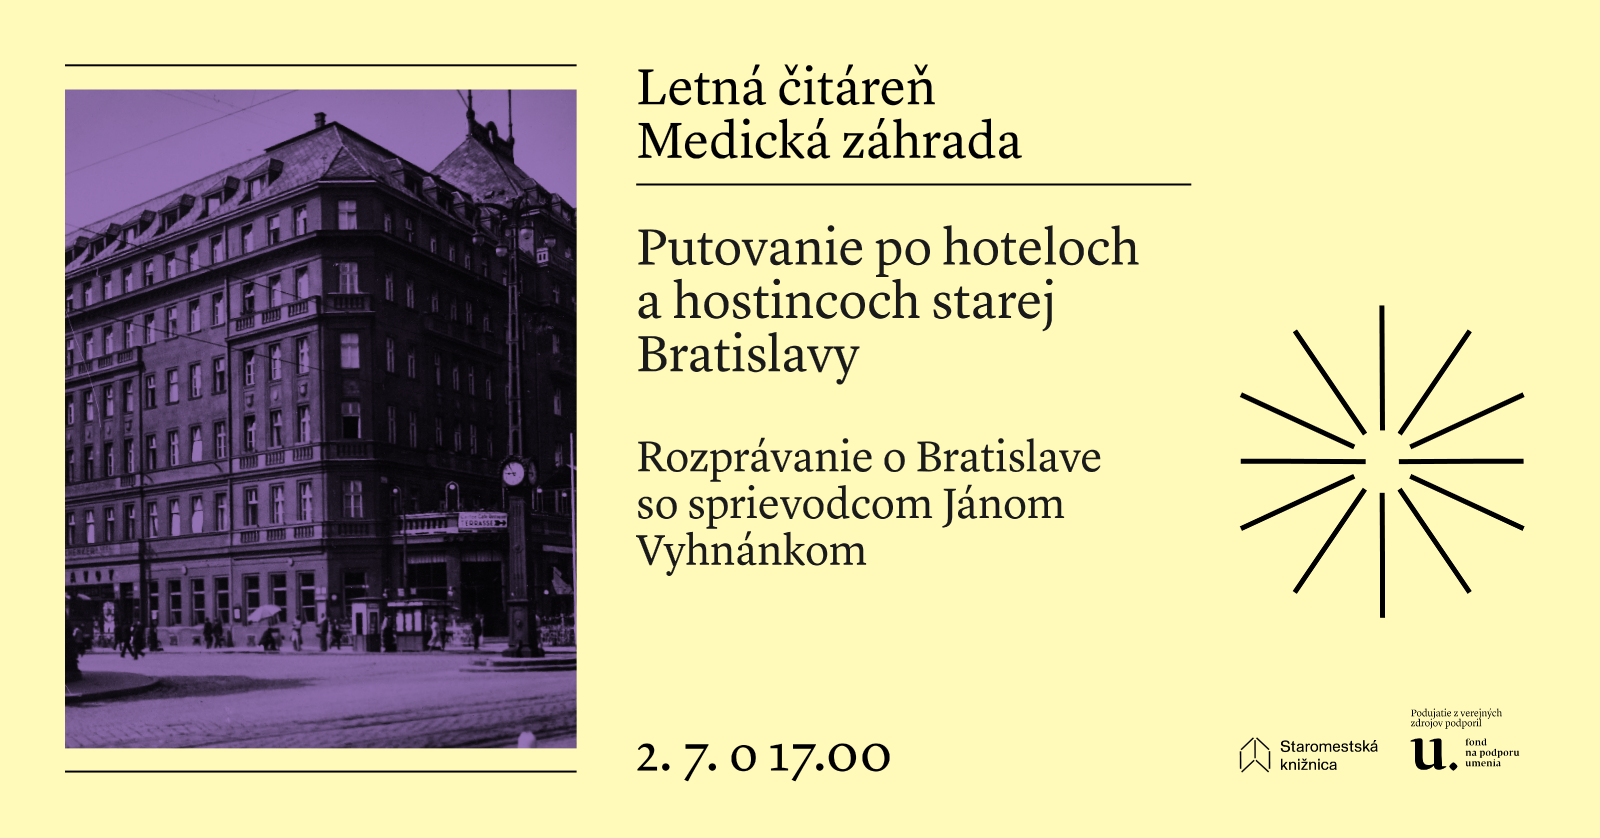 Putovanie po hoteloch a hostincoch starej Bratislavy - 2. 7. o 16.00 v Letnej čitárni Medická záhrada